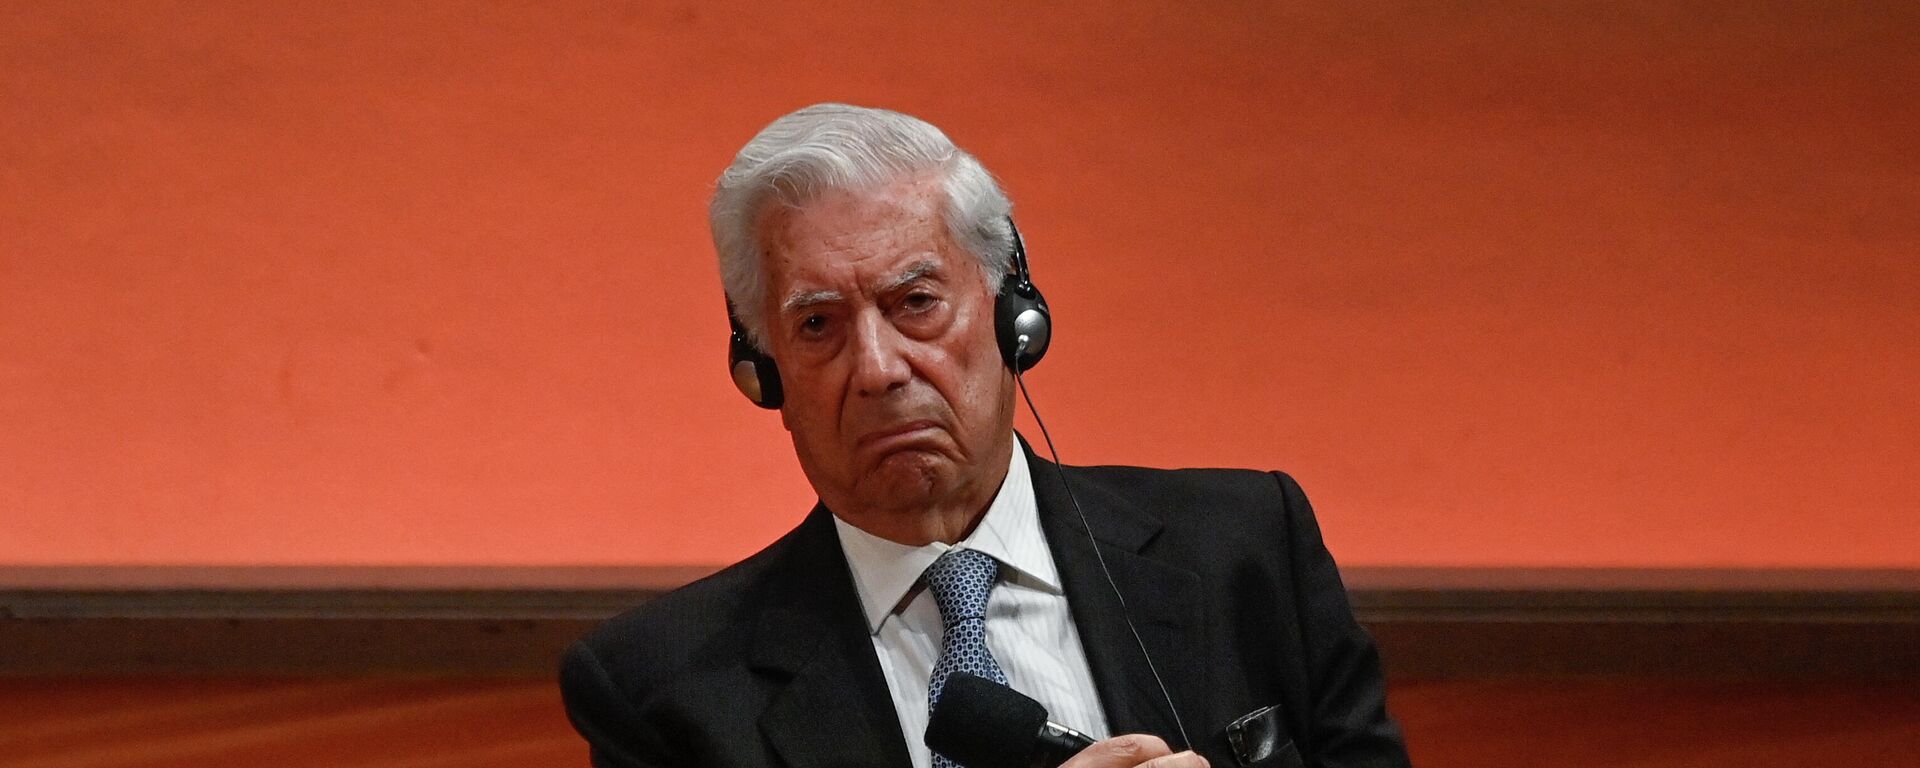 Mario Vargas Llosa, escritor - Sputnik Mundo, 1920, 23.09.2021